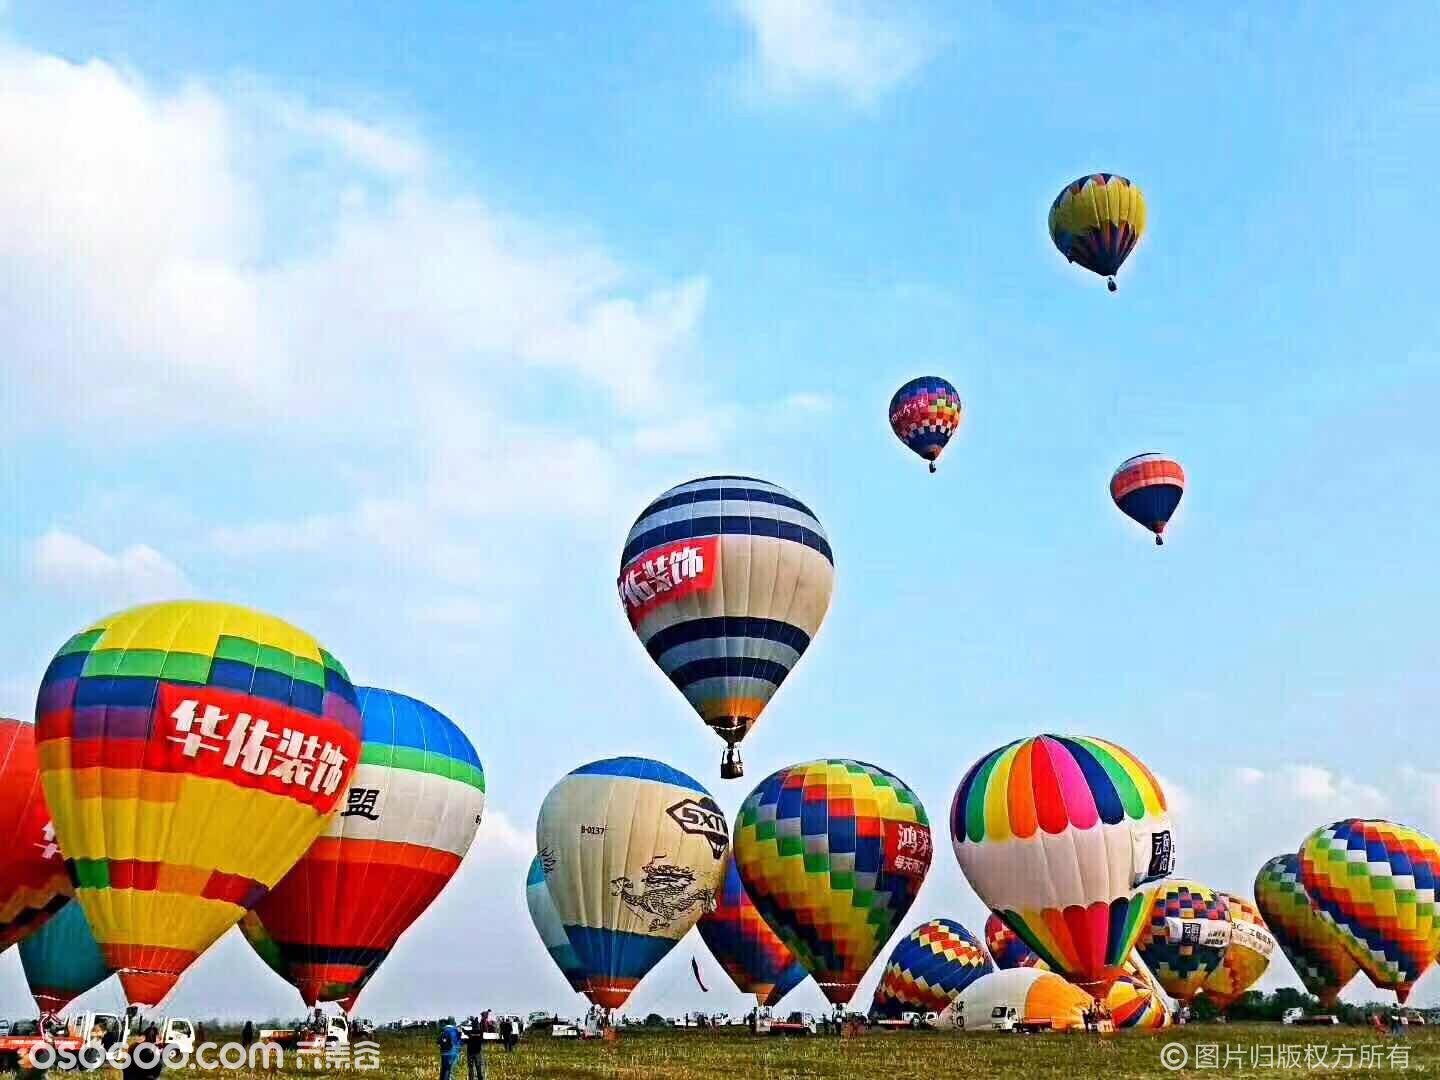 新疆地区热气球运营指南-旅发网,专业的旅游开发运营服务平台www.lvfacn.com